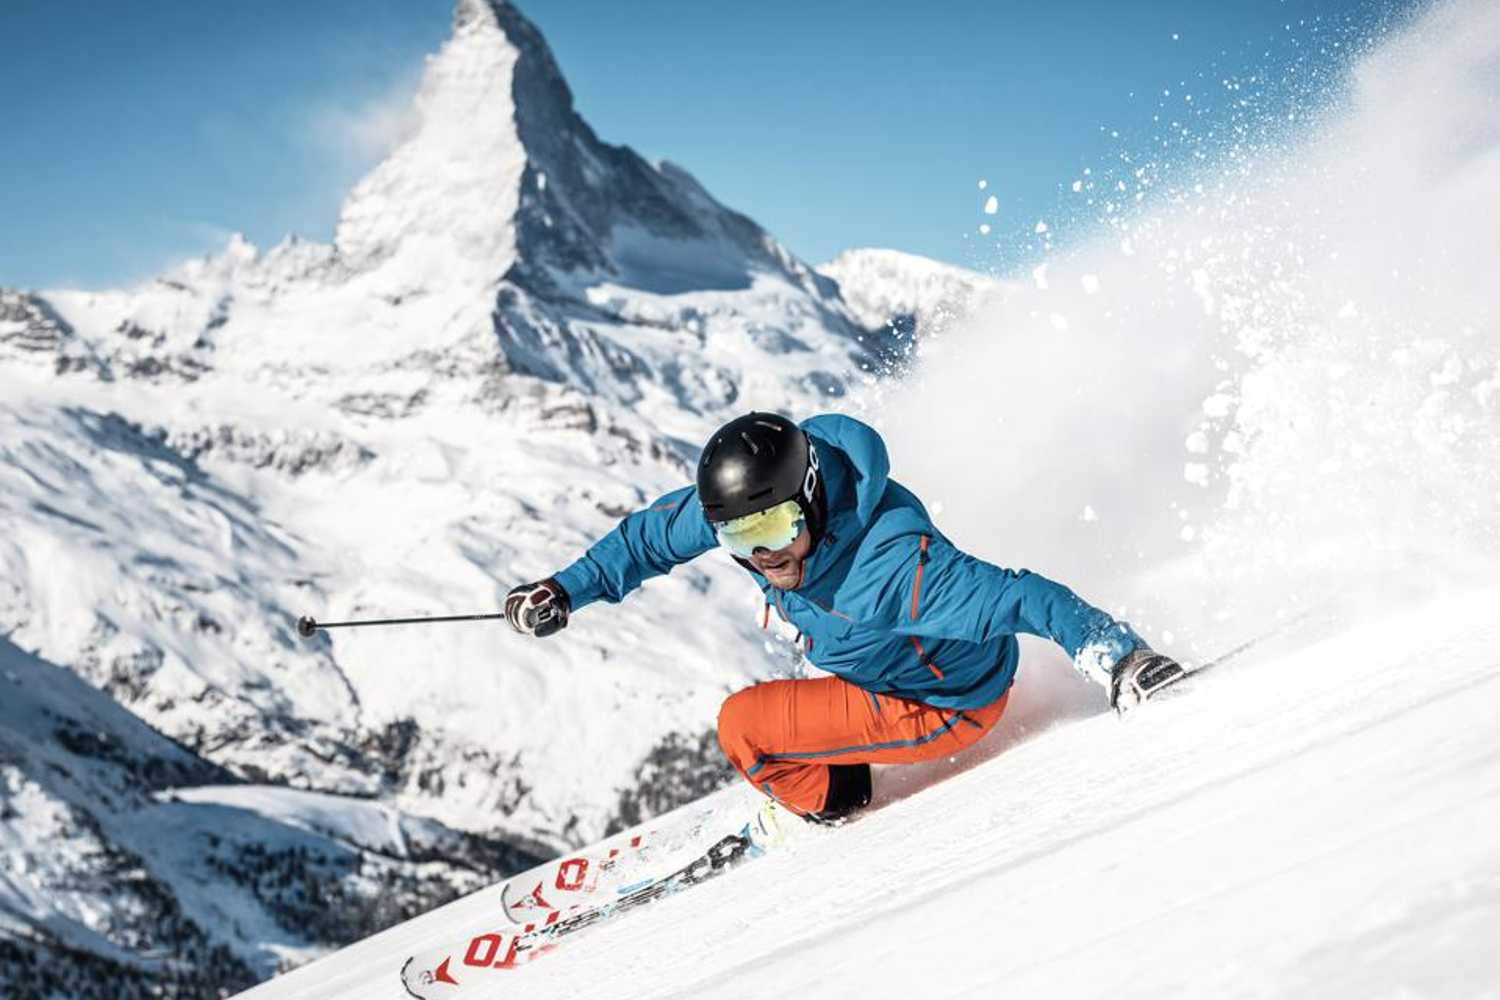 Jogos de Esqui na Neve no Jogos 360